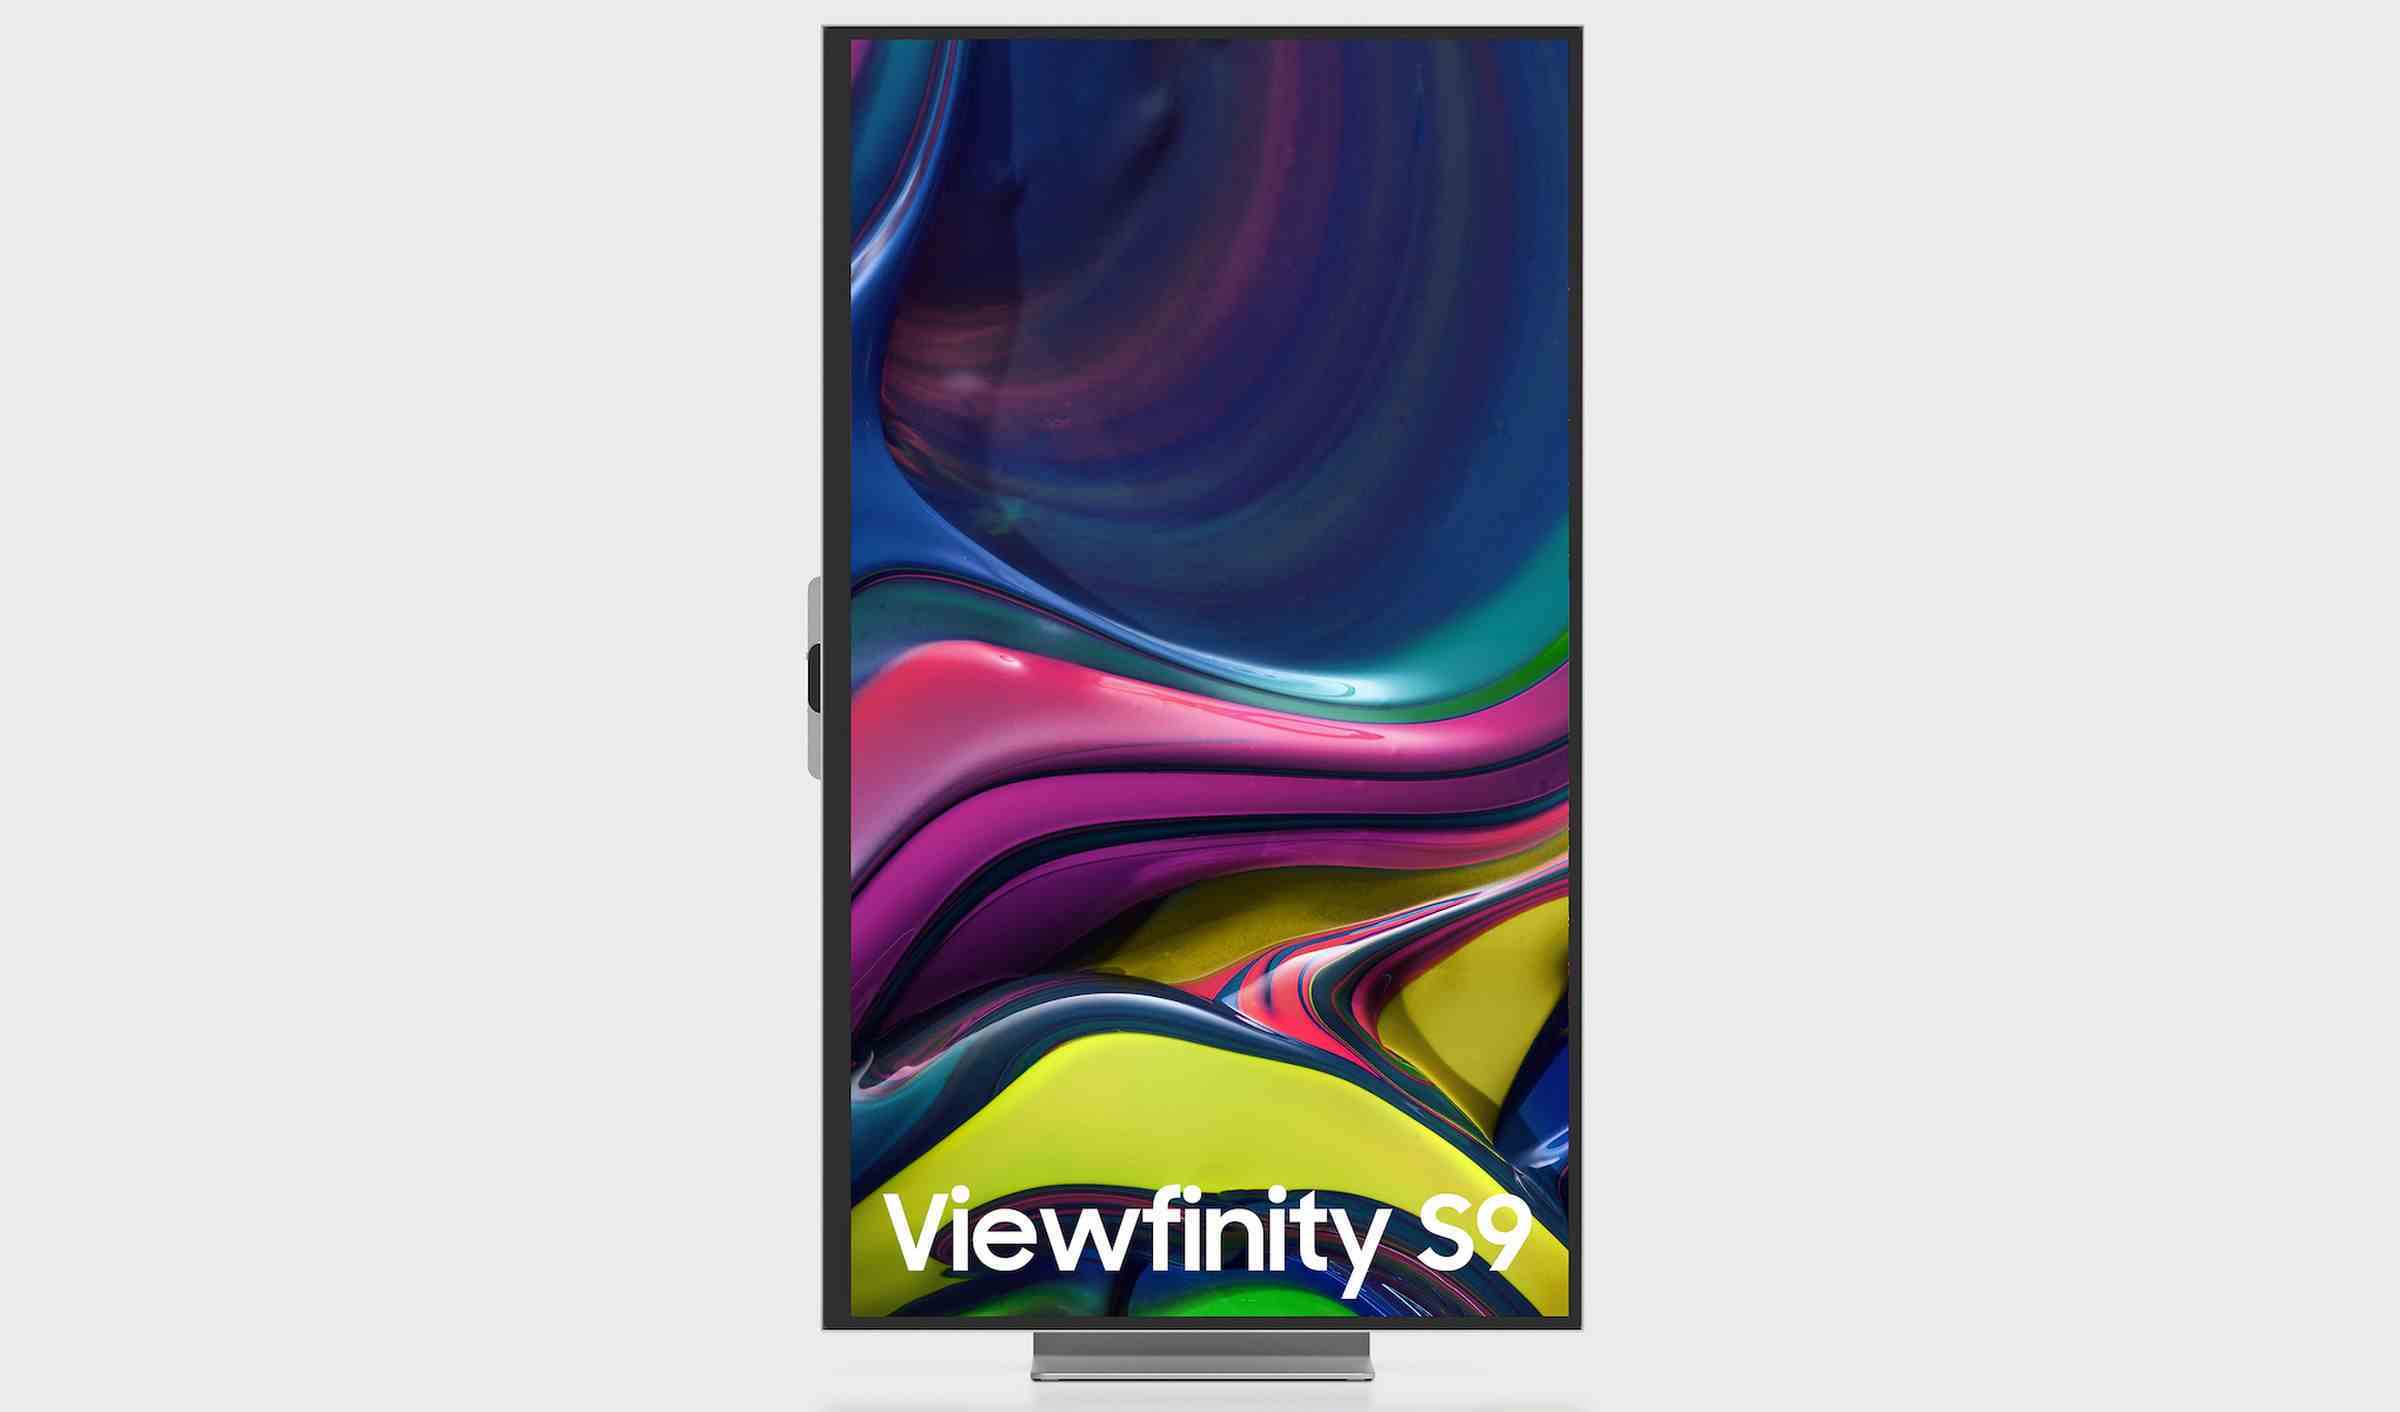 Samsung ViewFinity S9 monitörün dikey yöndeki görüntüsü.